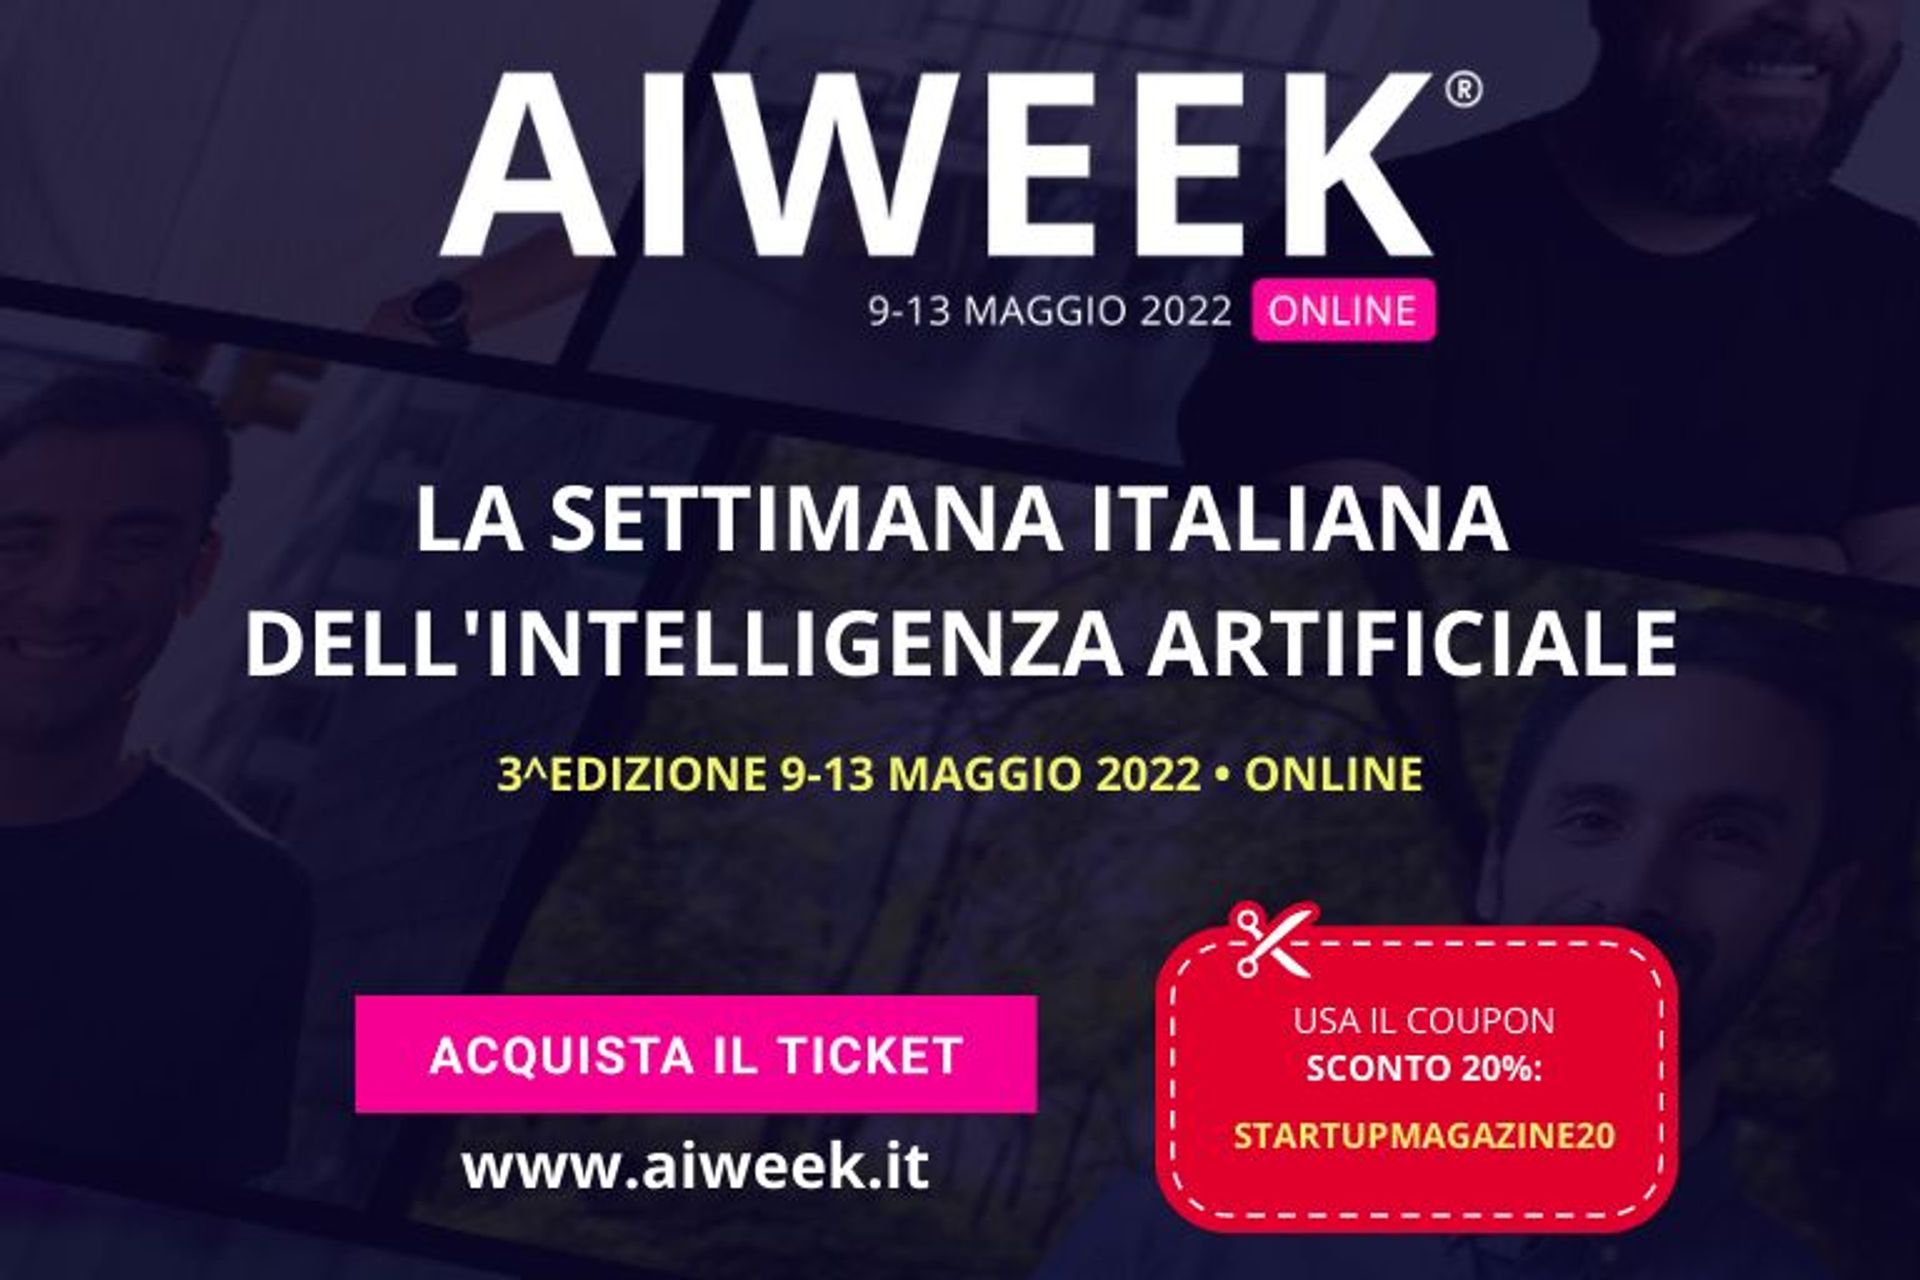 Горната част на страницата за печат и плаката на "AI Week - италианска седмица на изкуствения интелект"